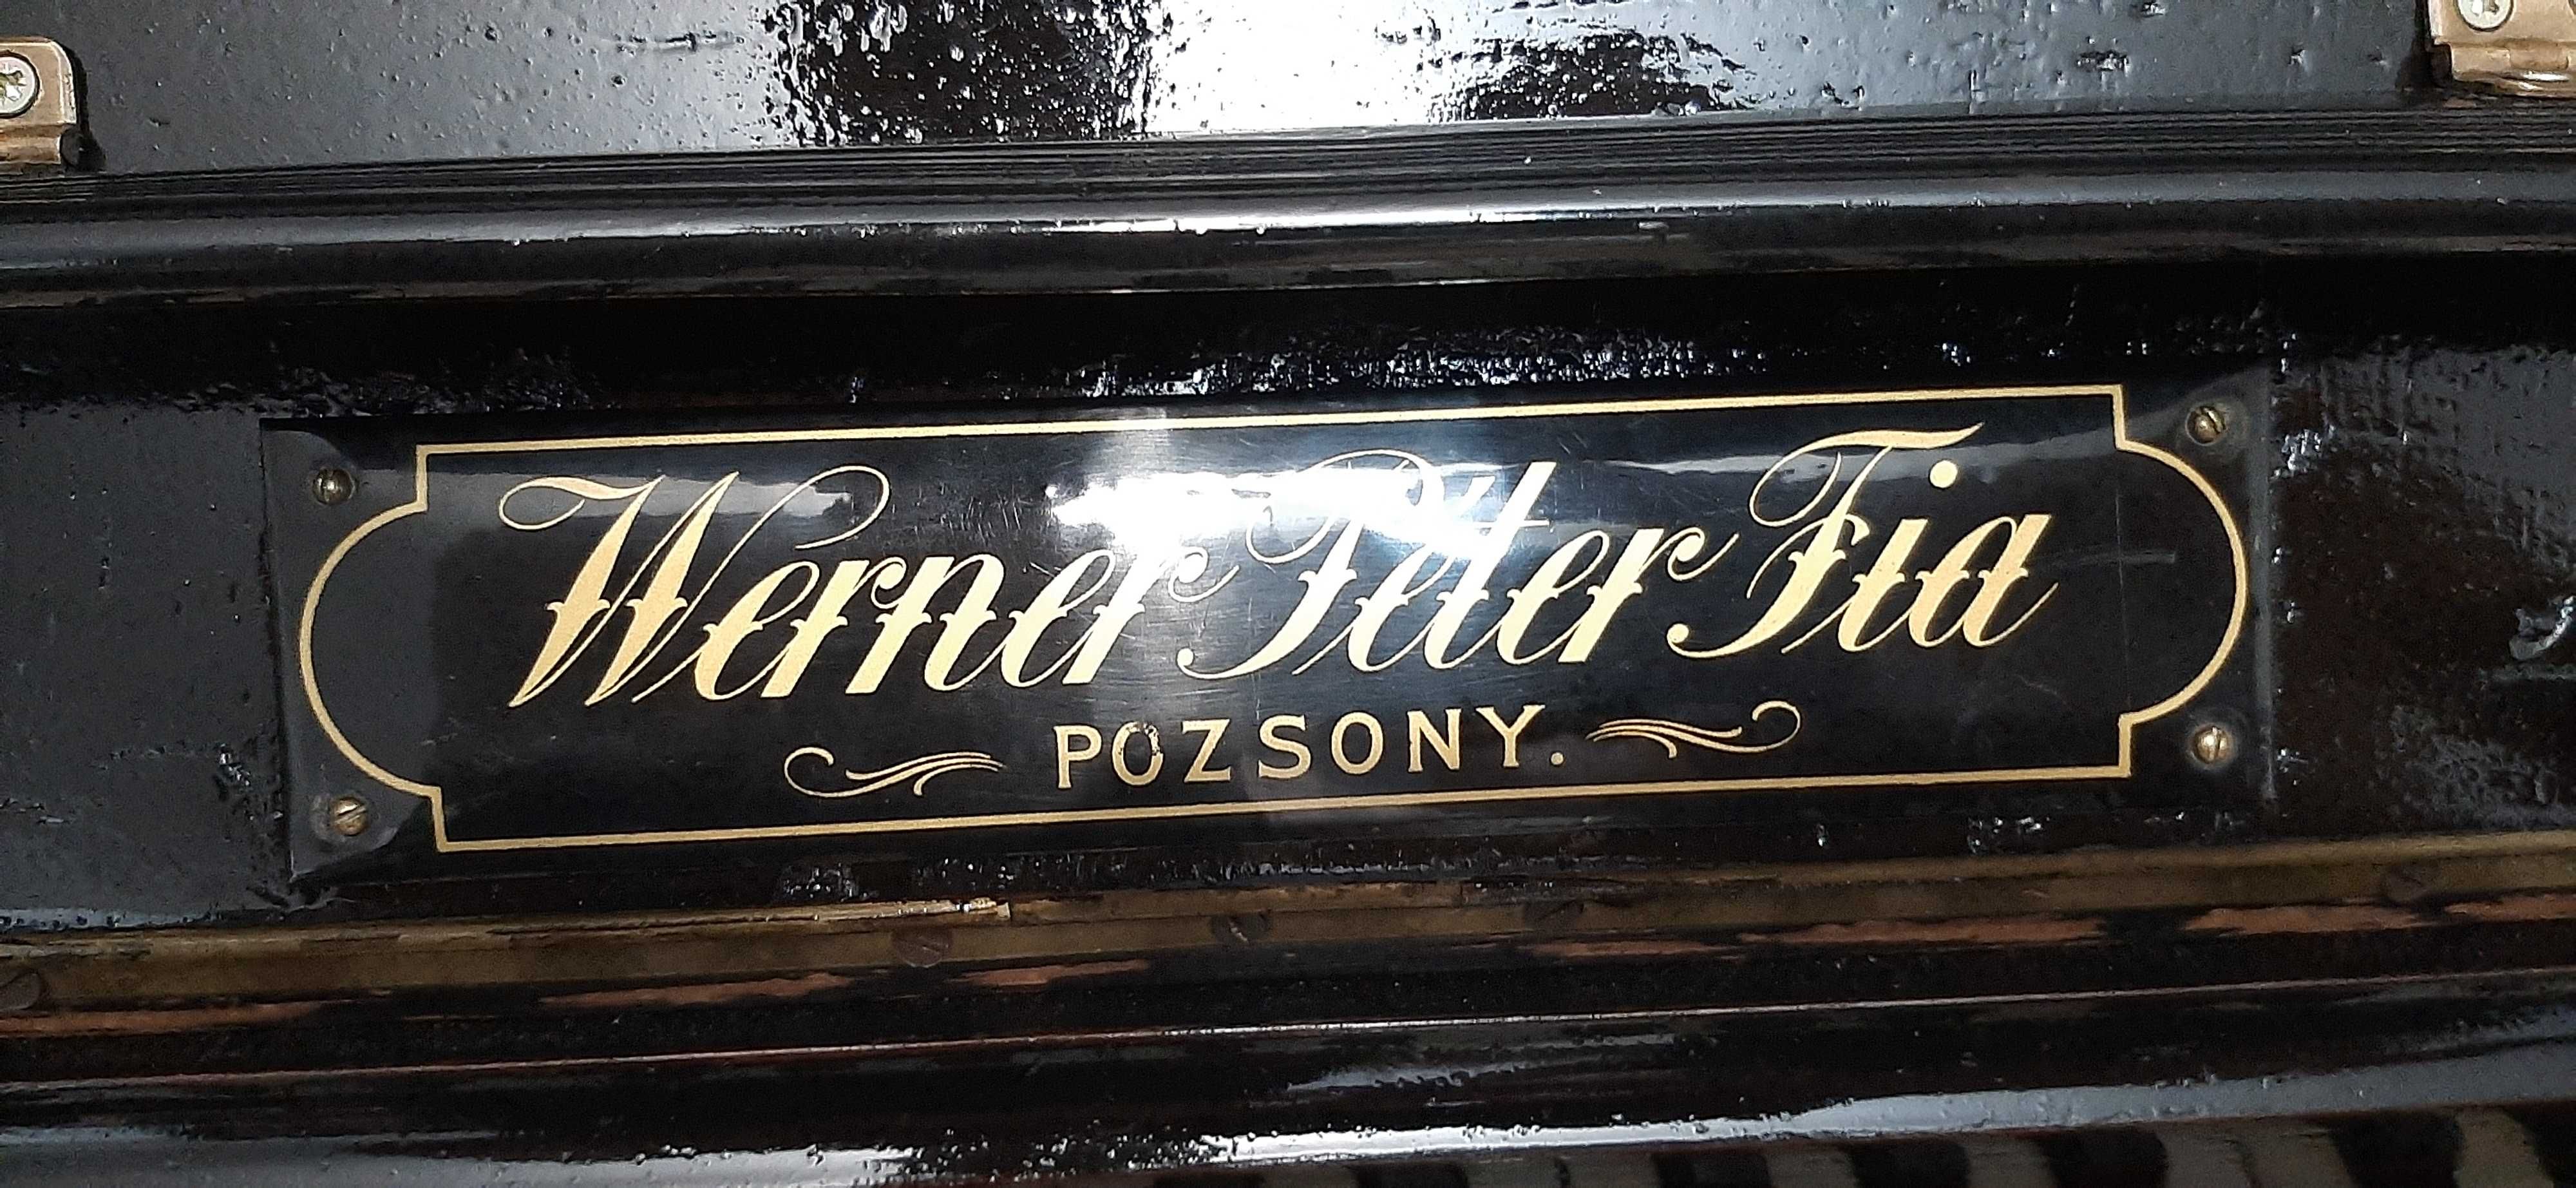 Vand pianina nemteasca veche